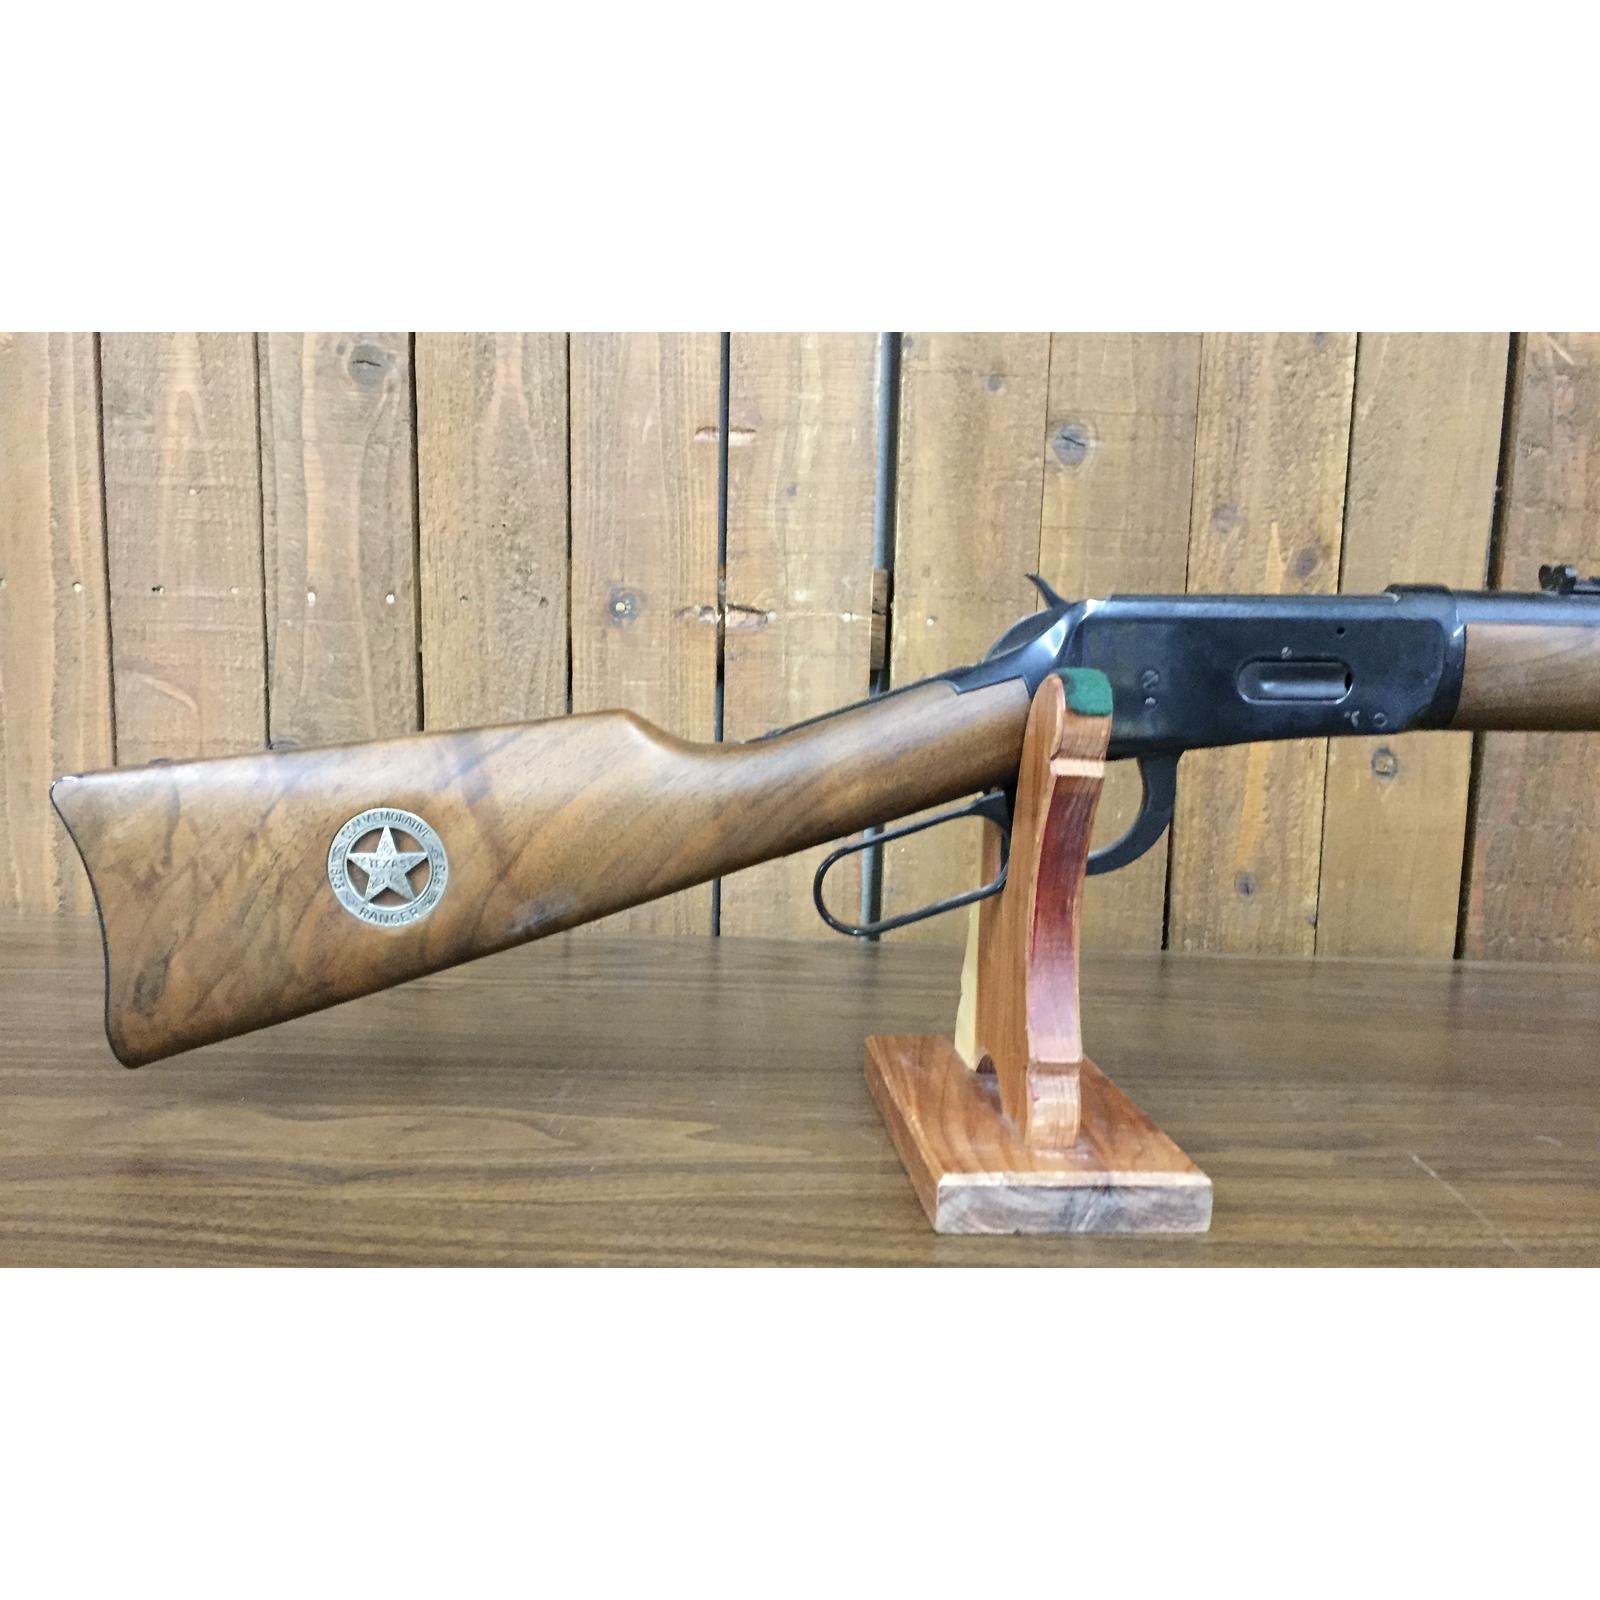 Winchester M. 94 Texas Ranger Commemorative Carbine